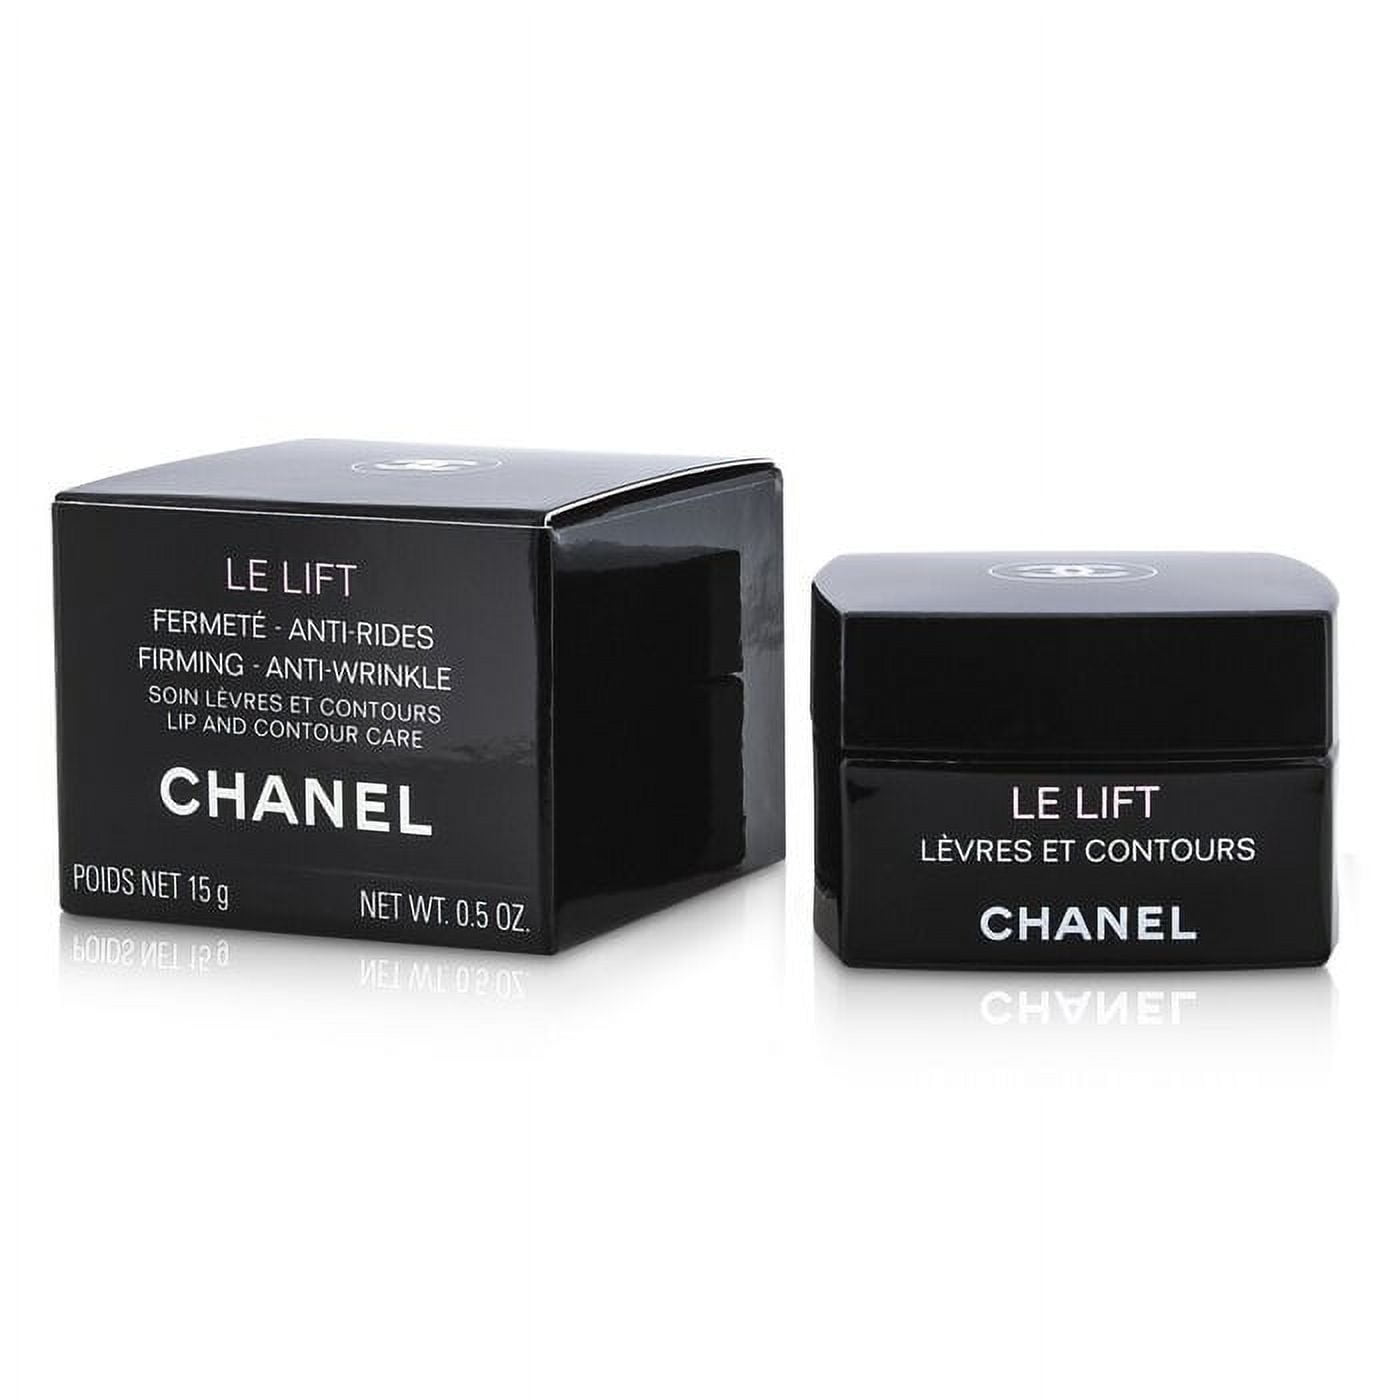  Chanel LE LIFT PRO CONCENTRÉ CONTOURS 1.0 oz / 30 ml : Beauty &  Personal Care